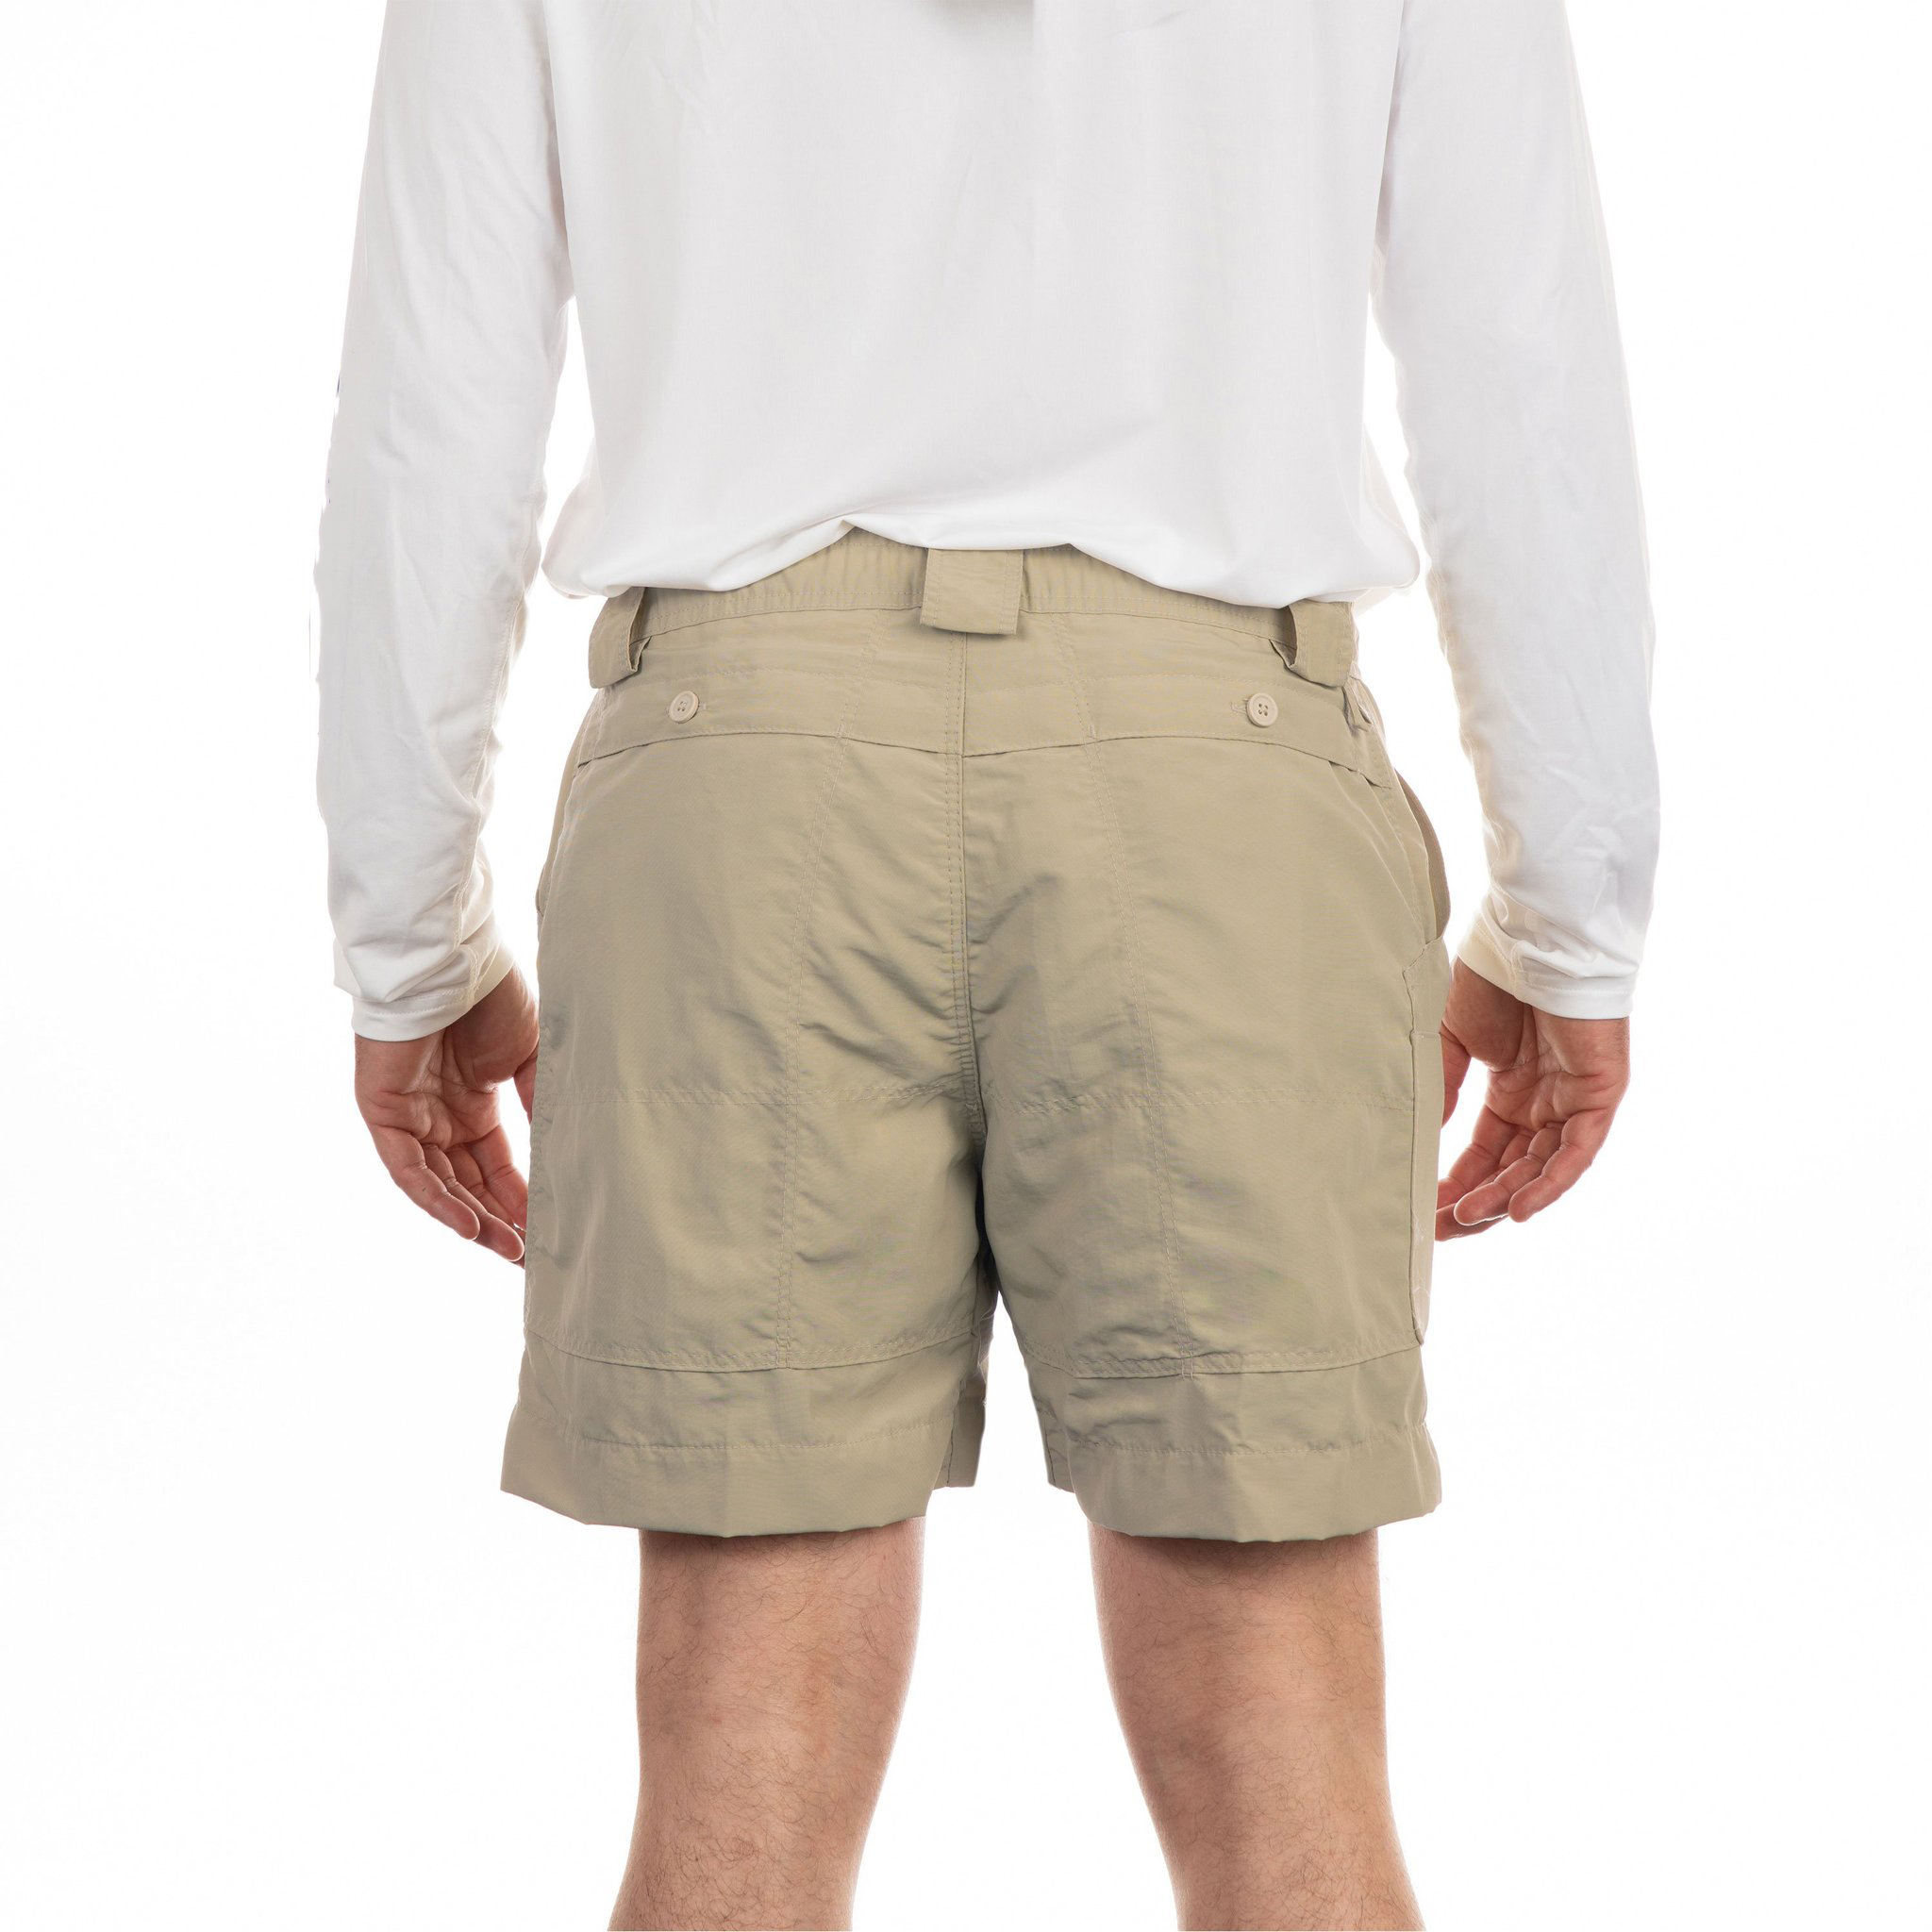 Moške ribiške kratke hlače s skritim raztegljivim pasom in logotipom po meri proizvajalca OEM za prosti čas.